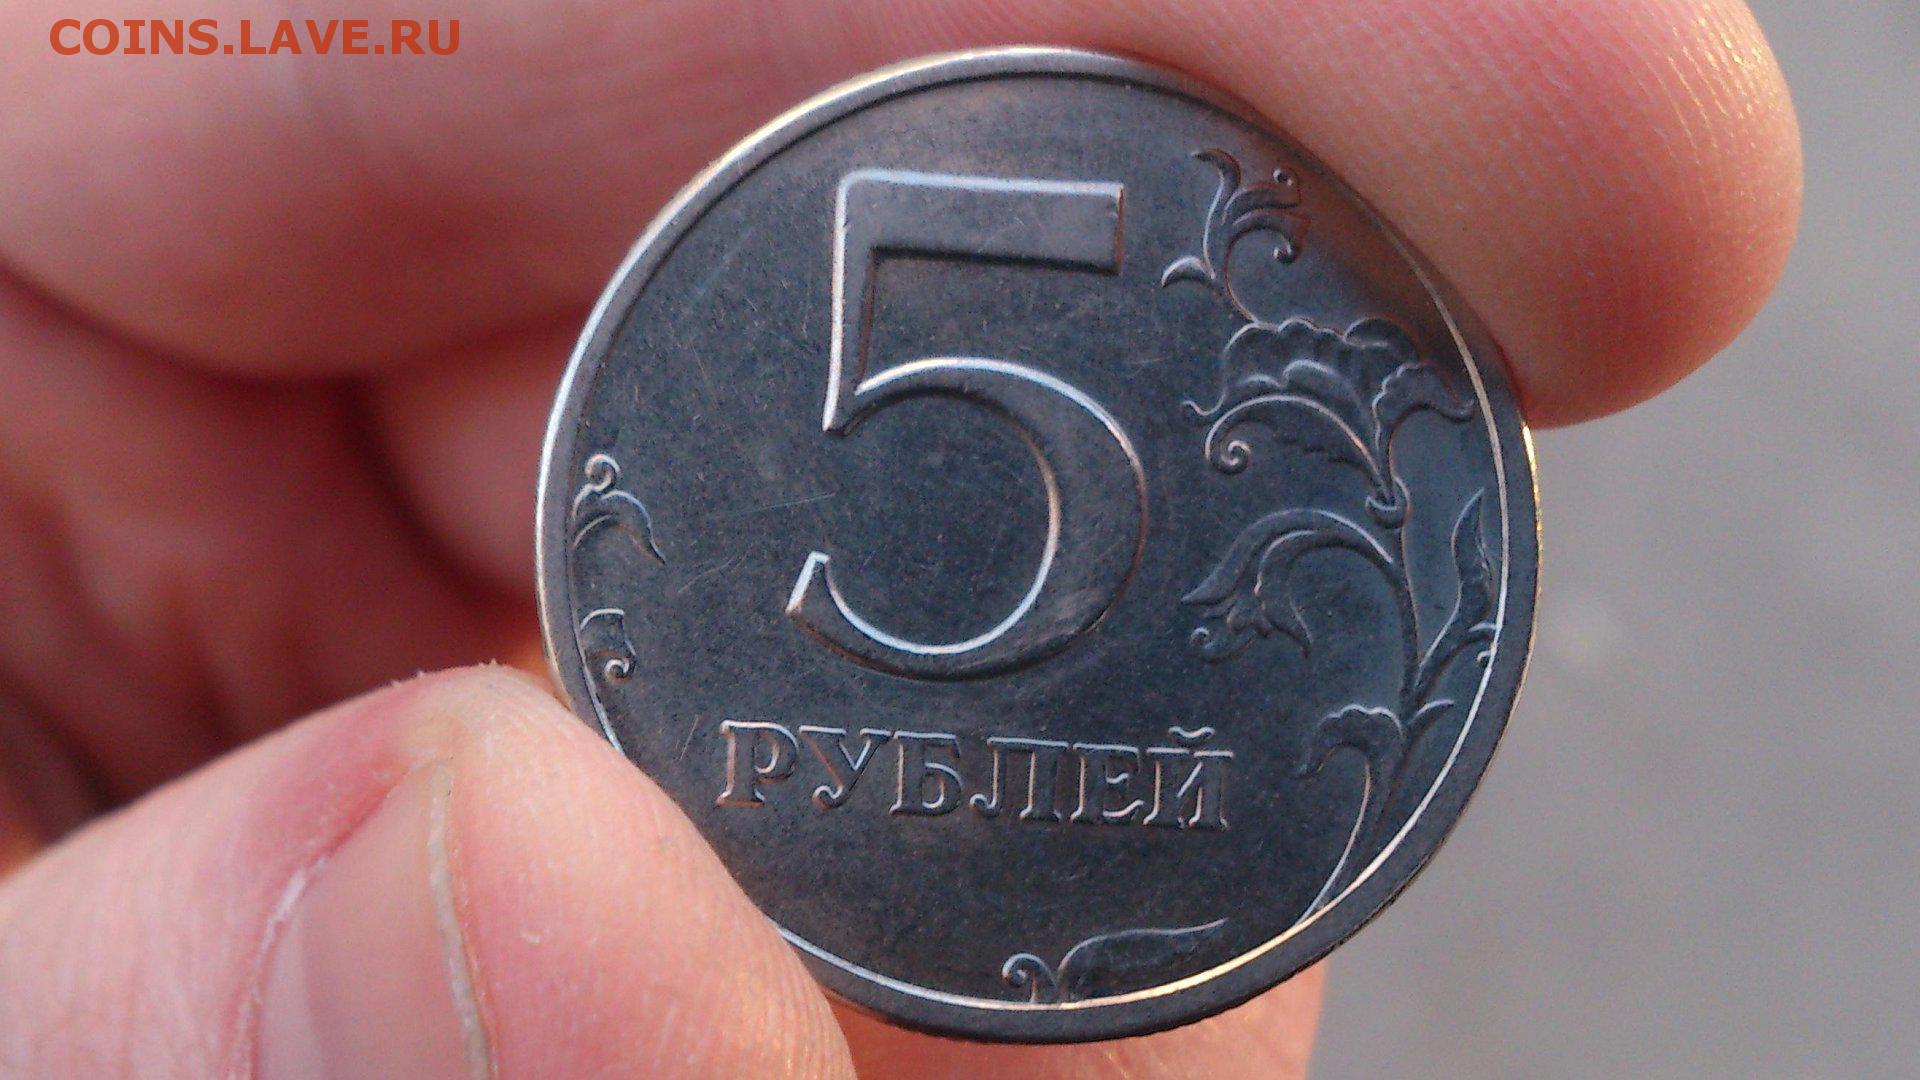 5 рублей вернули. Монеты. Монеты рубли. Монета 5 рублей в руке. Монетка 5 рублей.